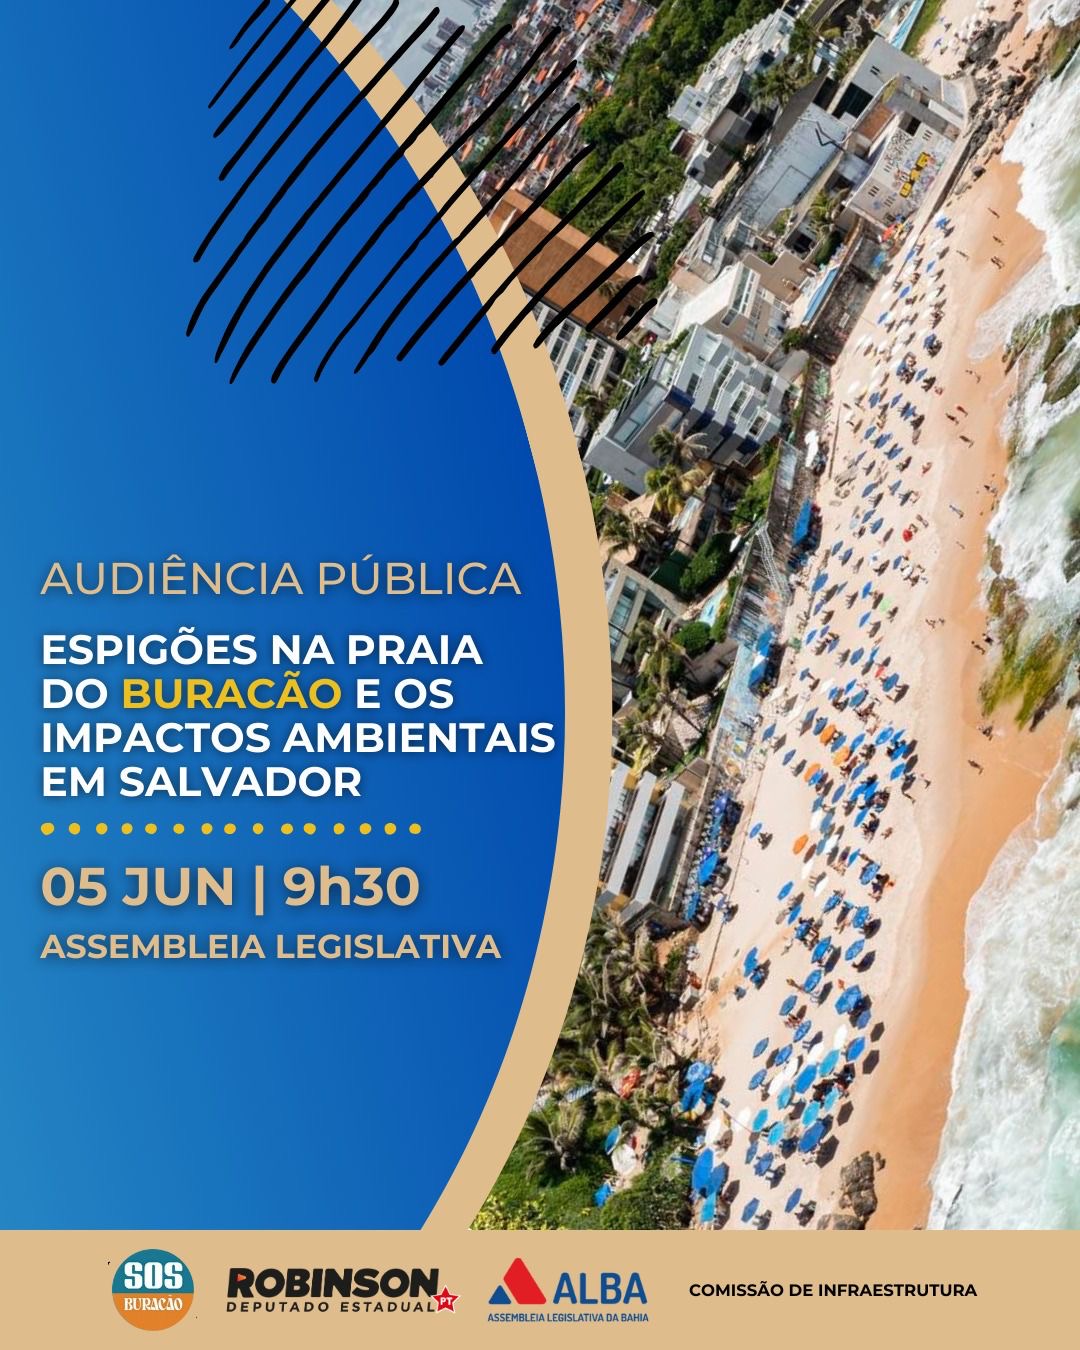 Audiência pública: Espigões na praia do Buracão e os impactos ambientais em Salvador 